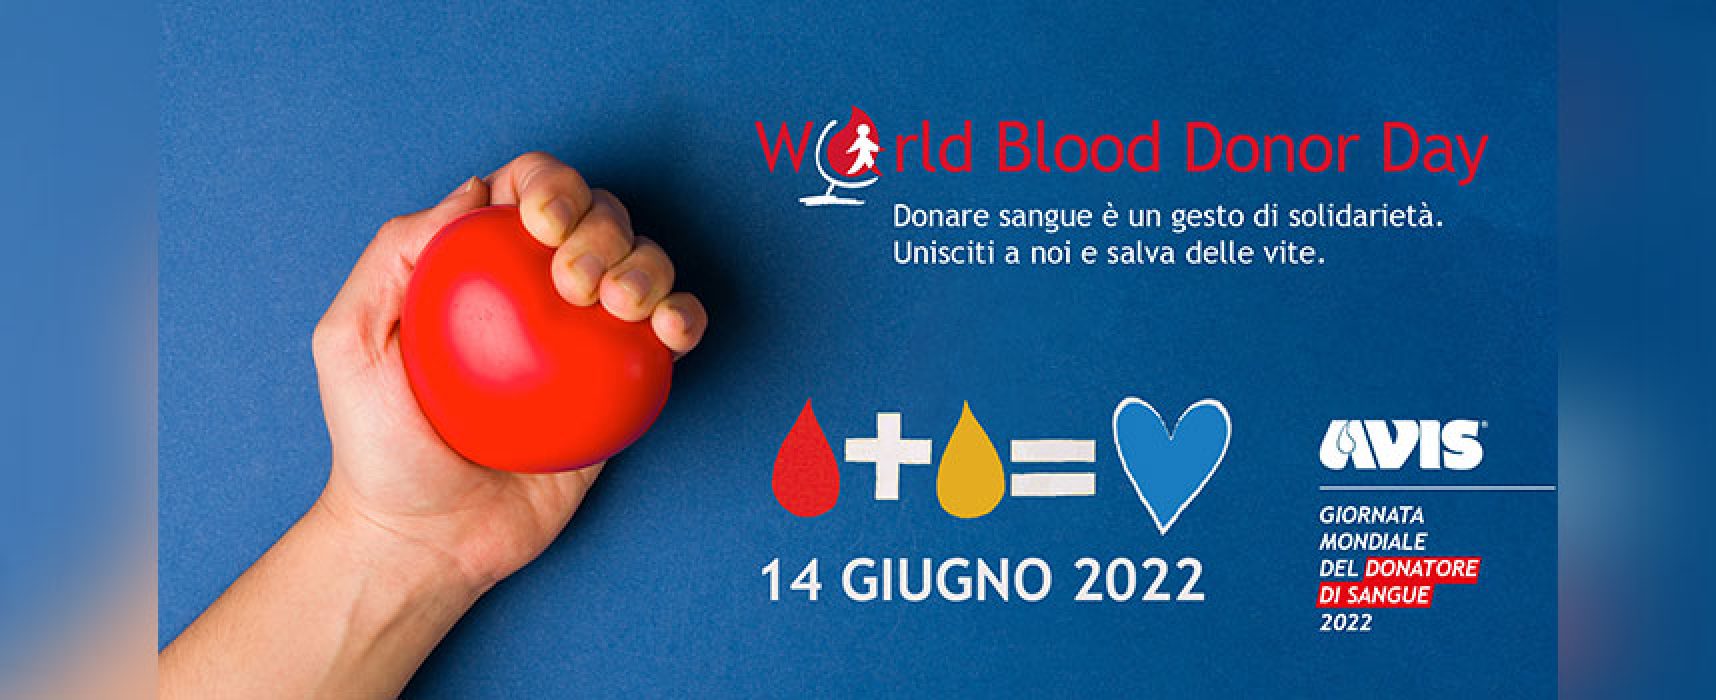 Monumenti biscegliesi illuminati di rosso per la Giornata Mondiale del Donatore di Sangue